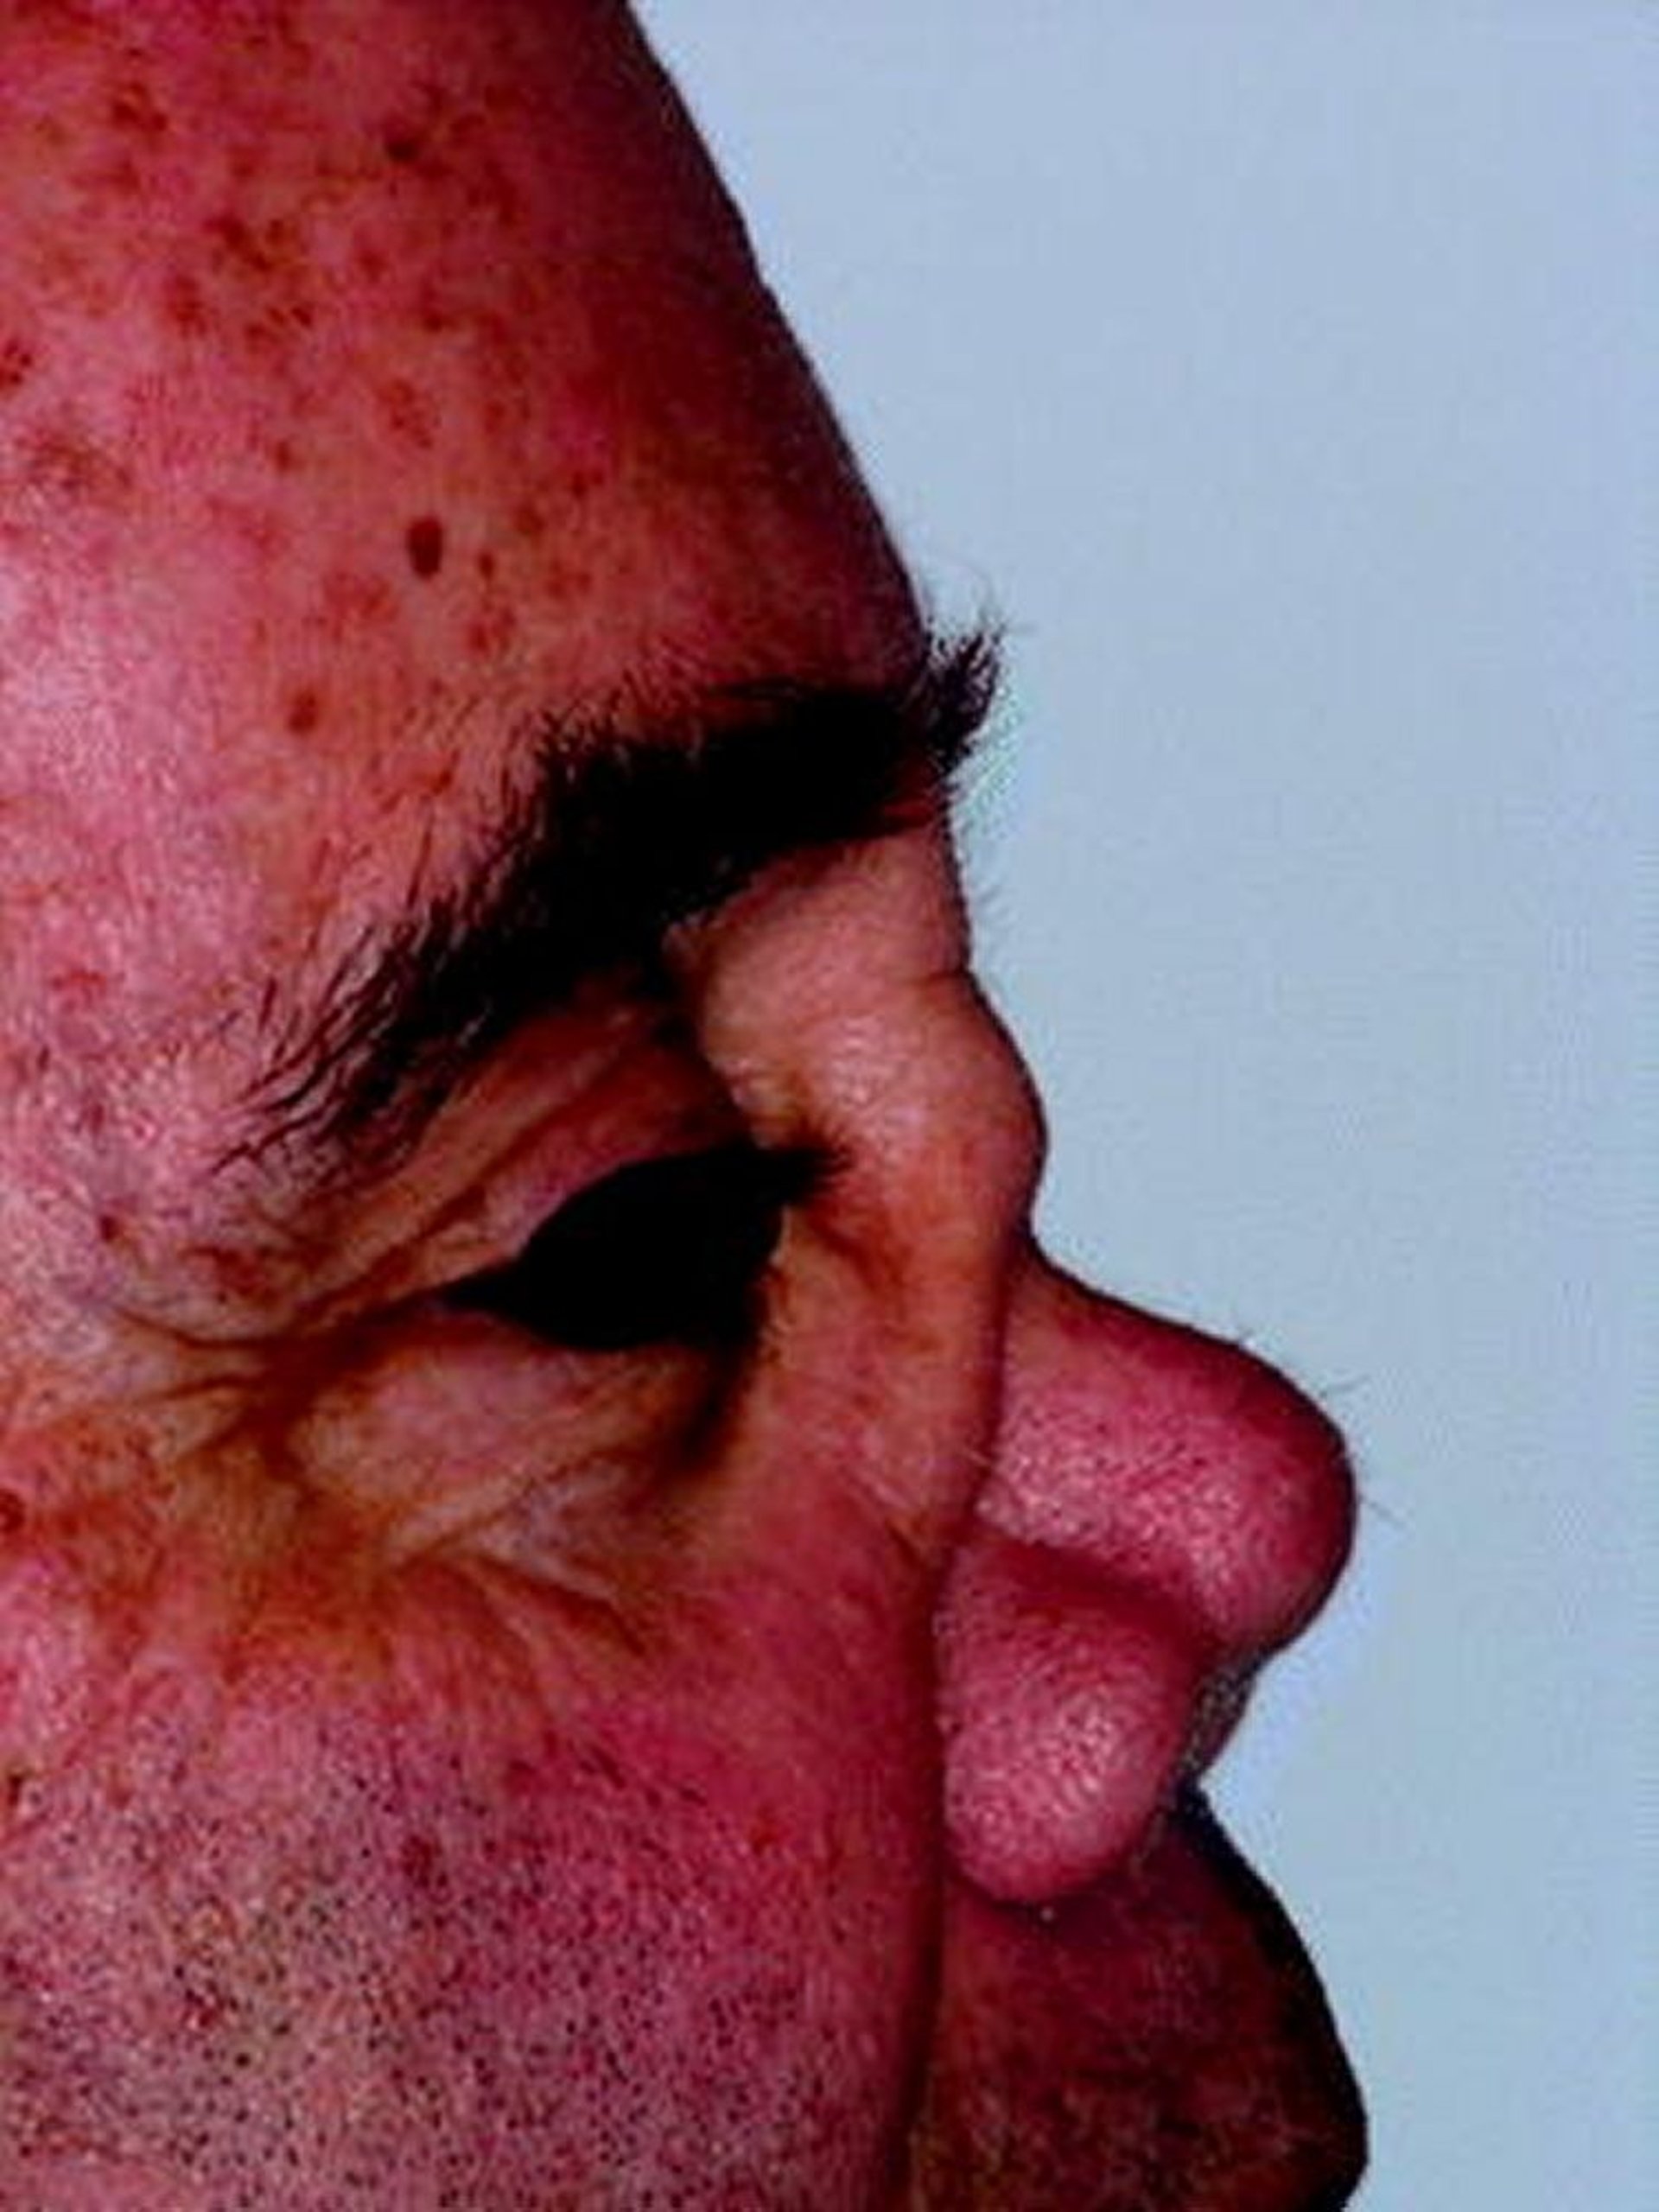 Déformation du nez en selle dans la granulomatose avec polyangéïte